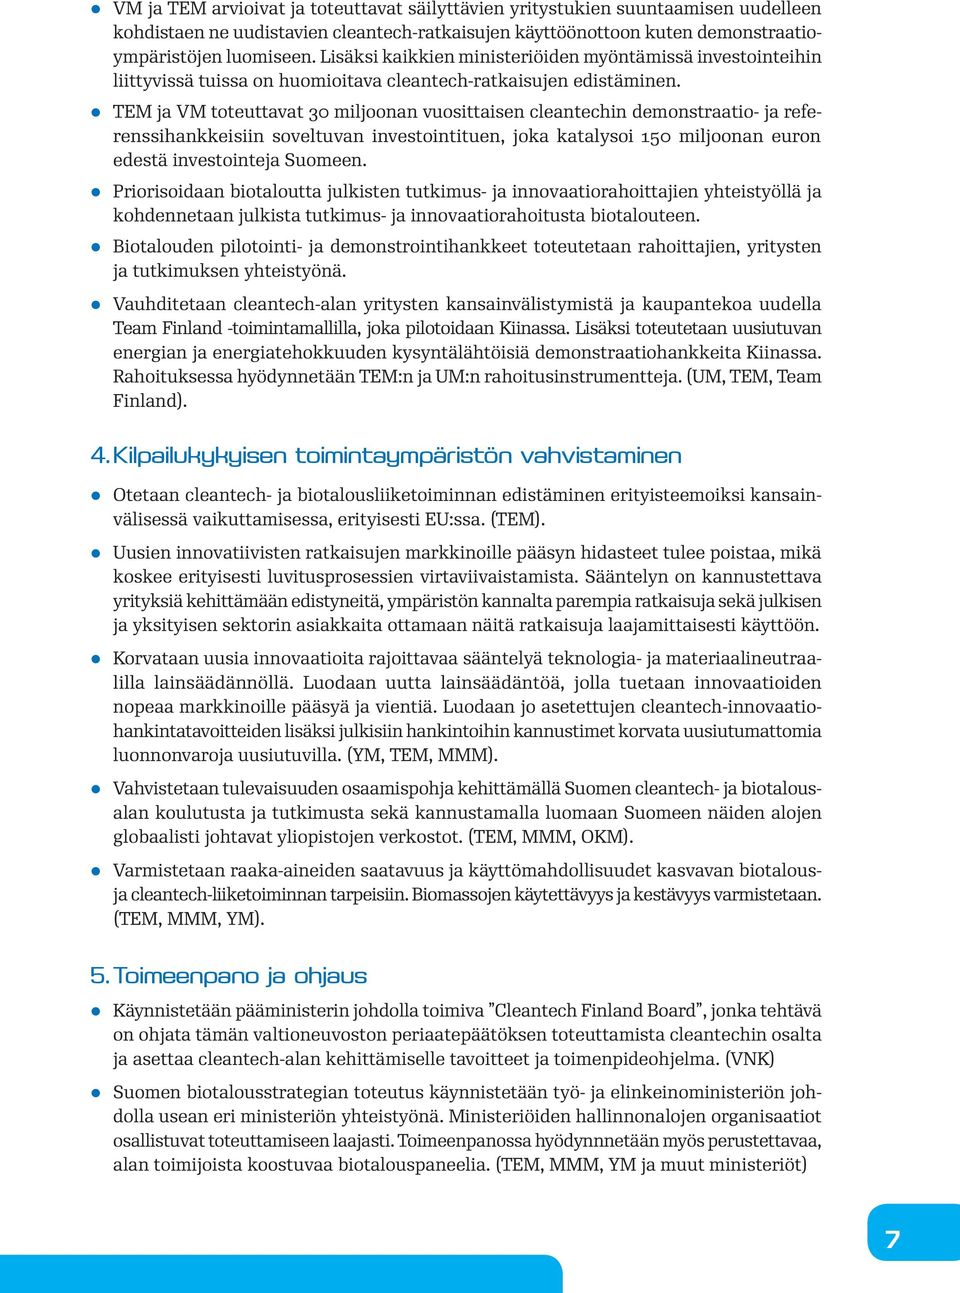 z TEM ja VM toteuttavat 30 miljoonan vuosittaisen cleantechin demonstraatio- ja referenssihankkeisiin soveltuvan investointituen, joka katalysoi 150 miljoonan euron edestä investointeja Suomeen.